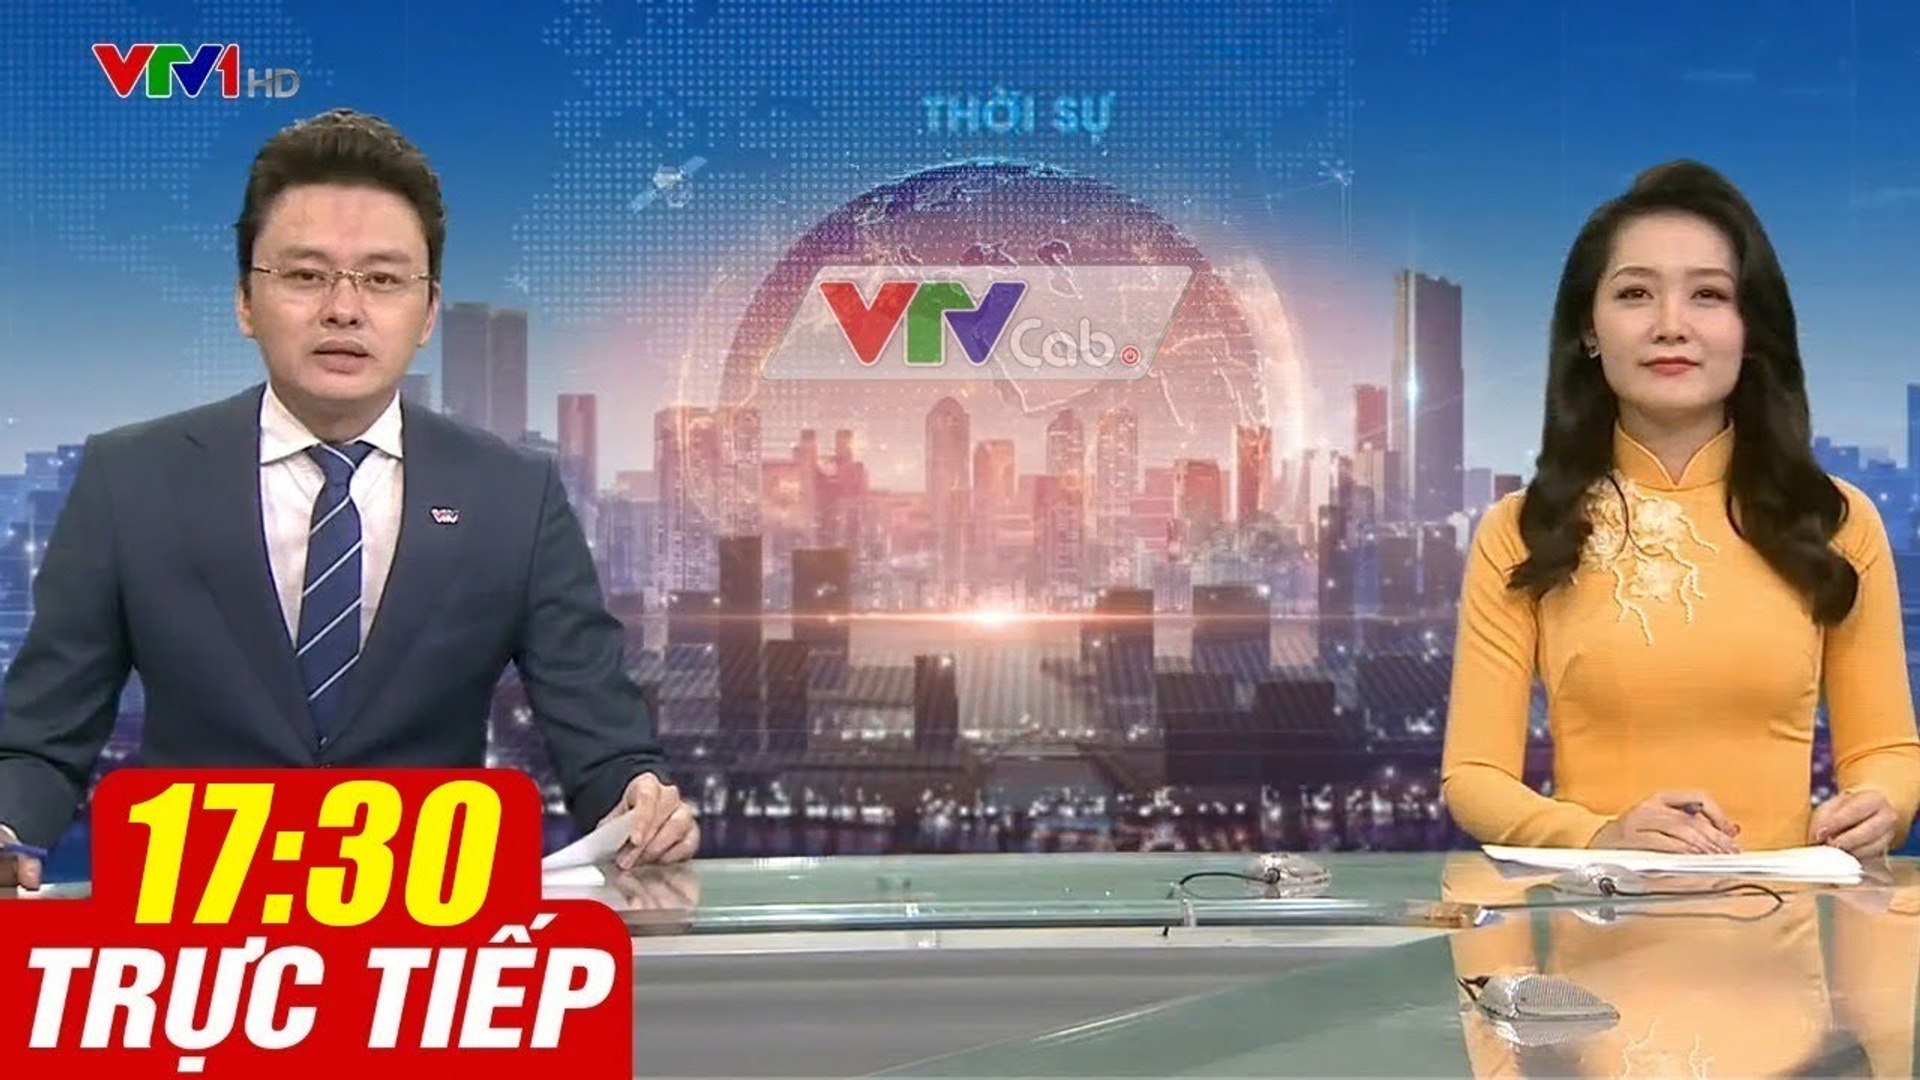 Trực Tiếp VIỆT NAM HÔM NAY 17h30 ngày 27.08.2020  Tin tức thời sự VTV1 mới nhất hôm nay